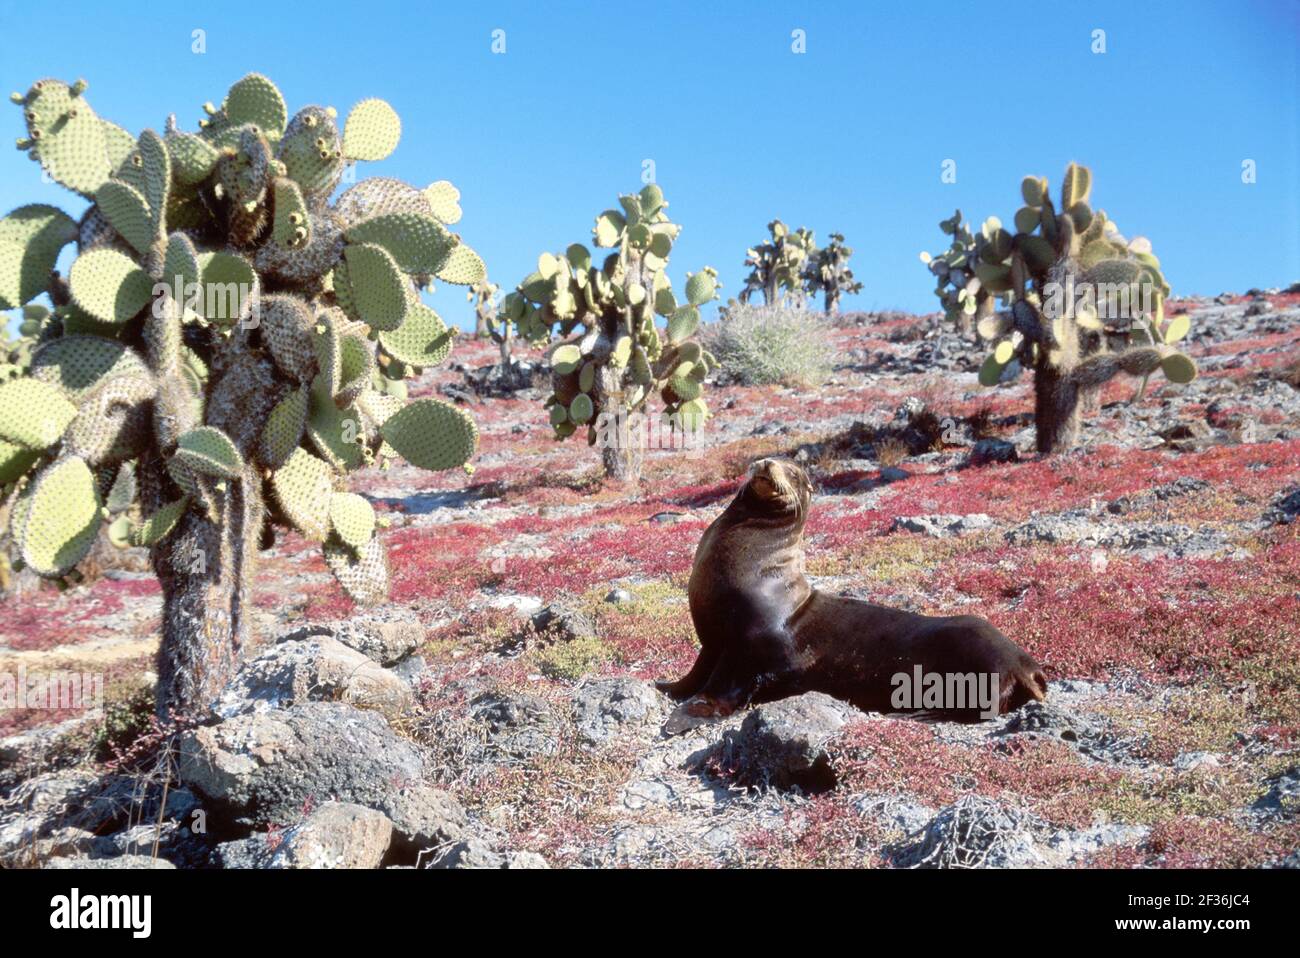 Îles Galapagos South Plaza Island Equateur Equatorien Amérique du Sud américain, cactus taureau mâle mer lion rouge sessuvium saison sèche, Banque D'Images